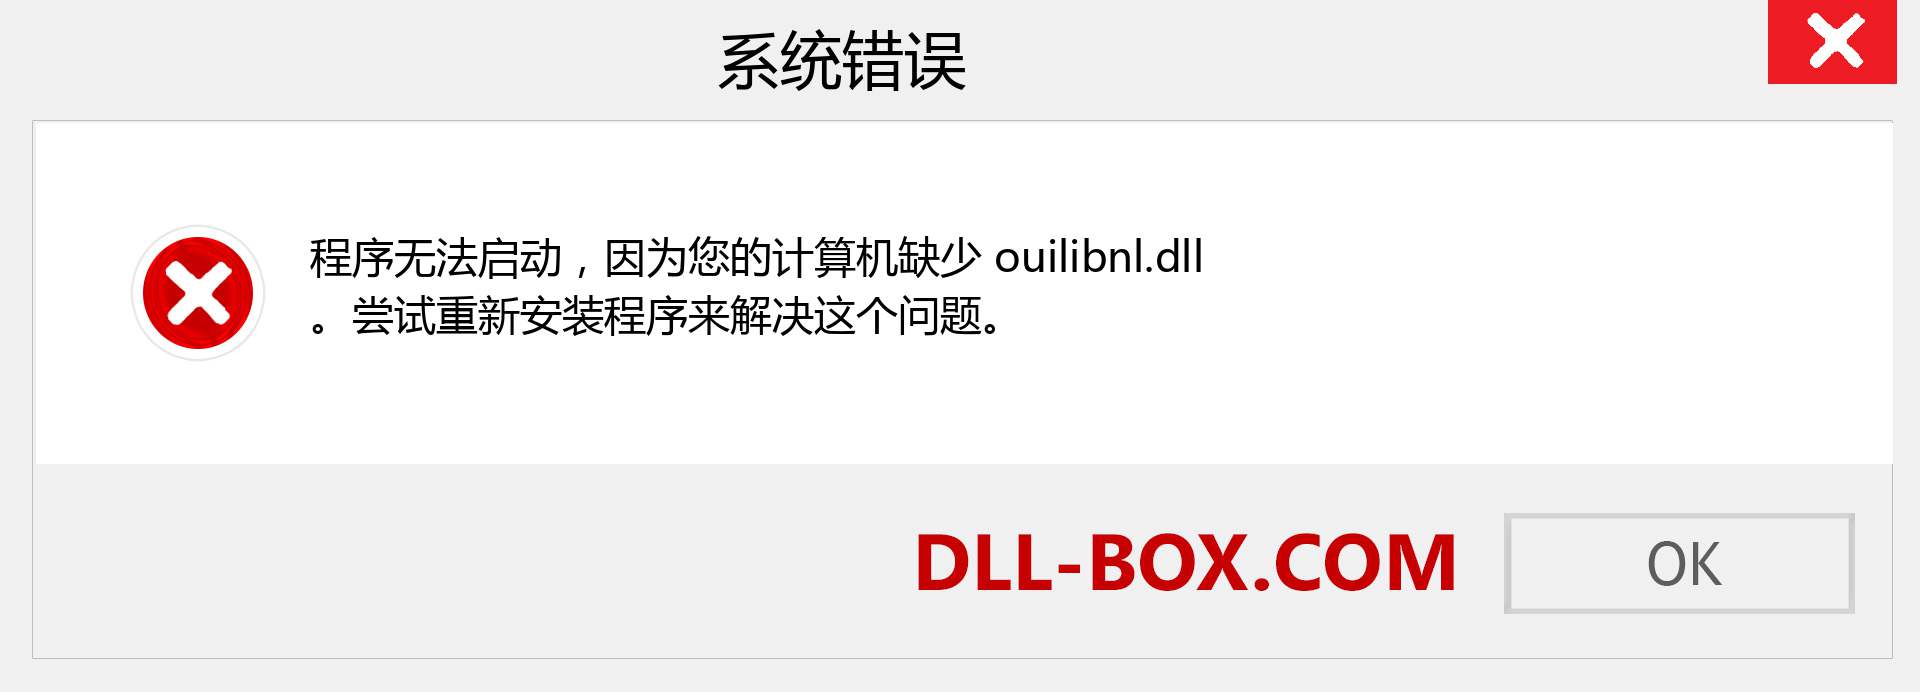 ouilibnl.dll 文件丢失？。 适用于 Windows 7、8、10 的下载 - 修复 Windows、照片、图像上的 ouilibnl dll 丢失错误